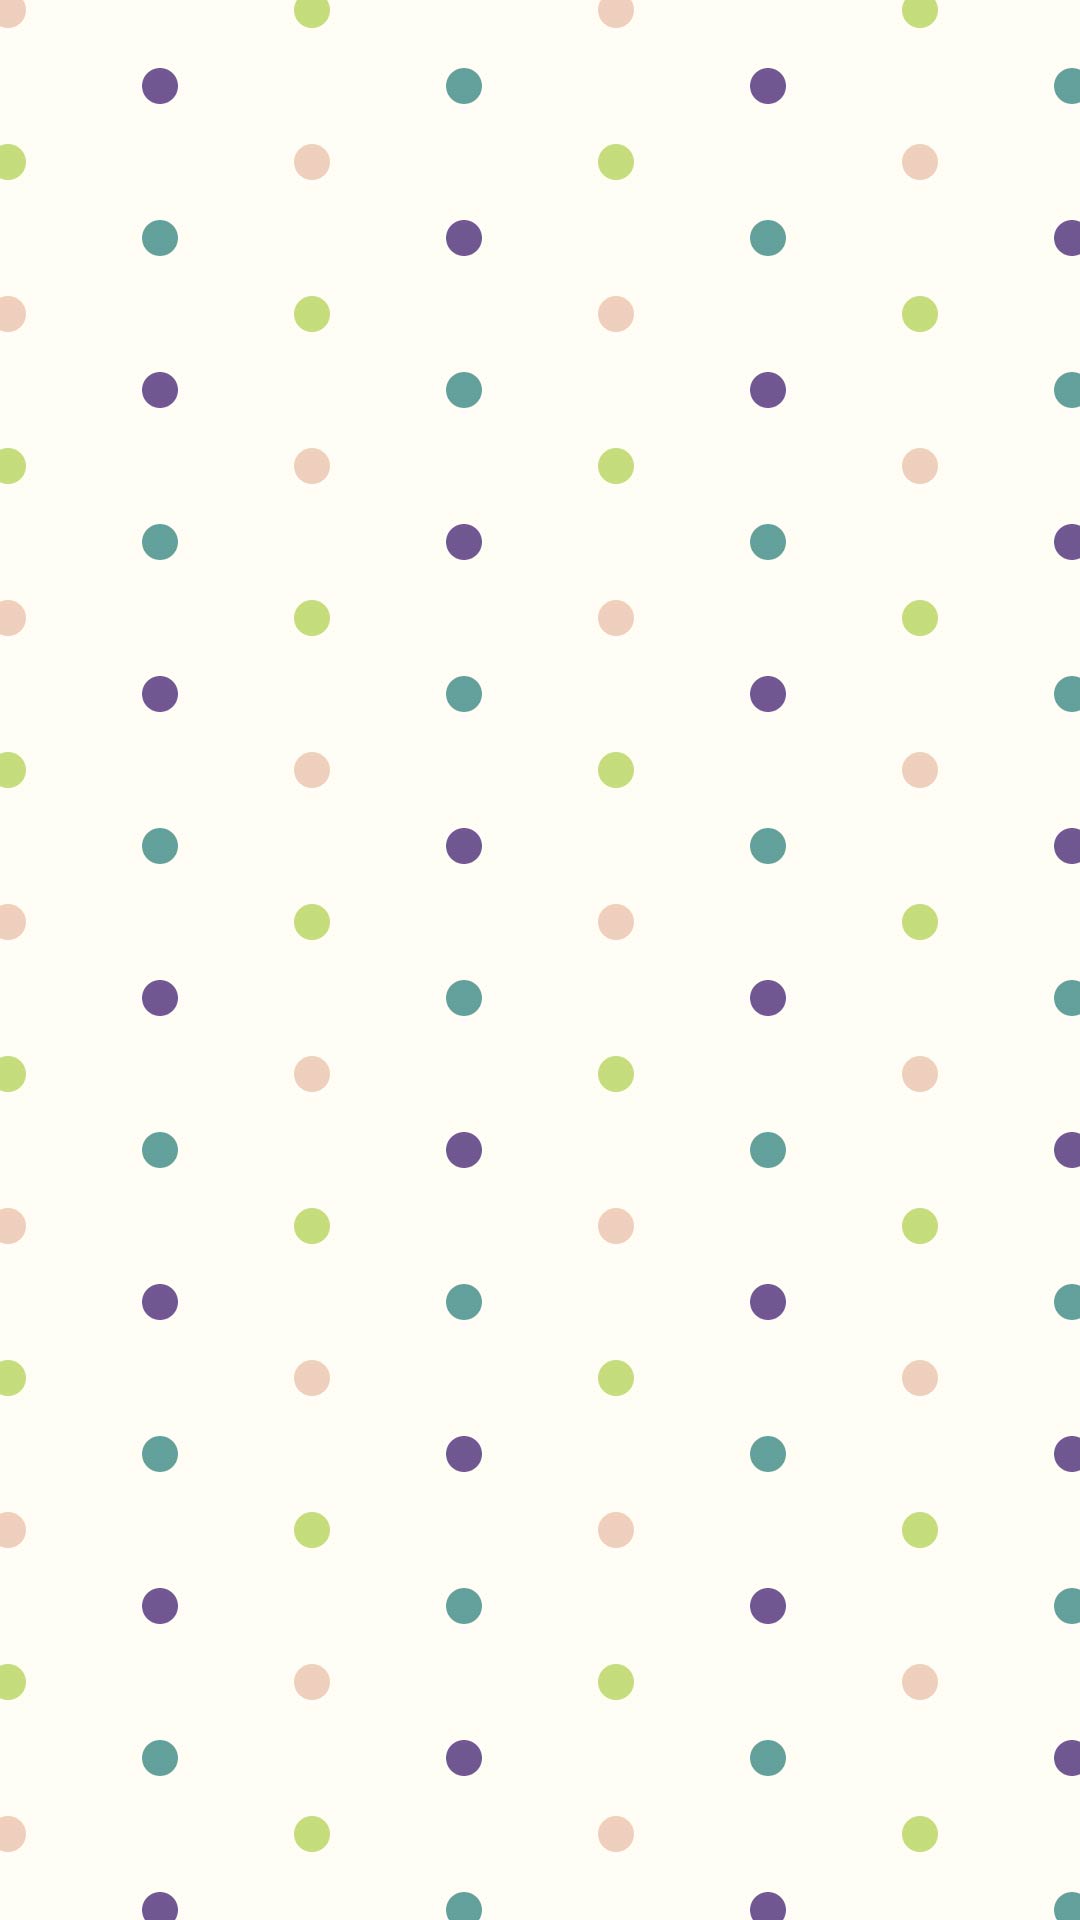 クリーム色の背景にシンプルな緑系のドットのパターン